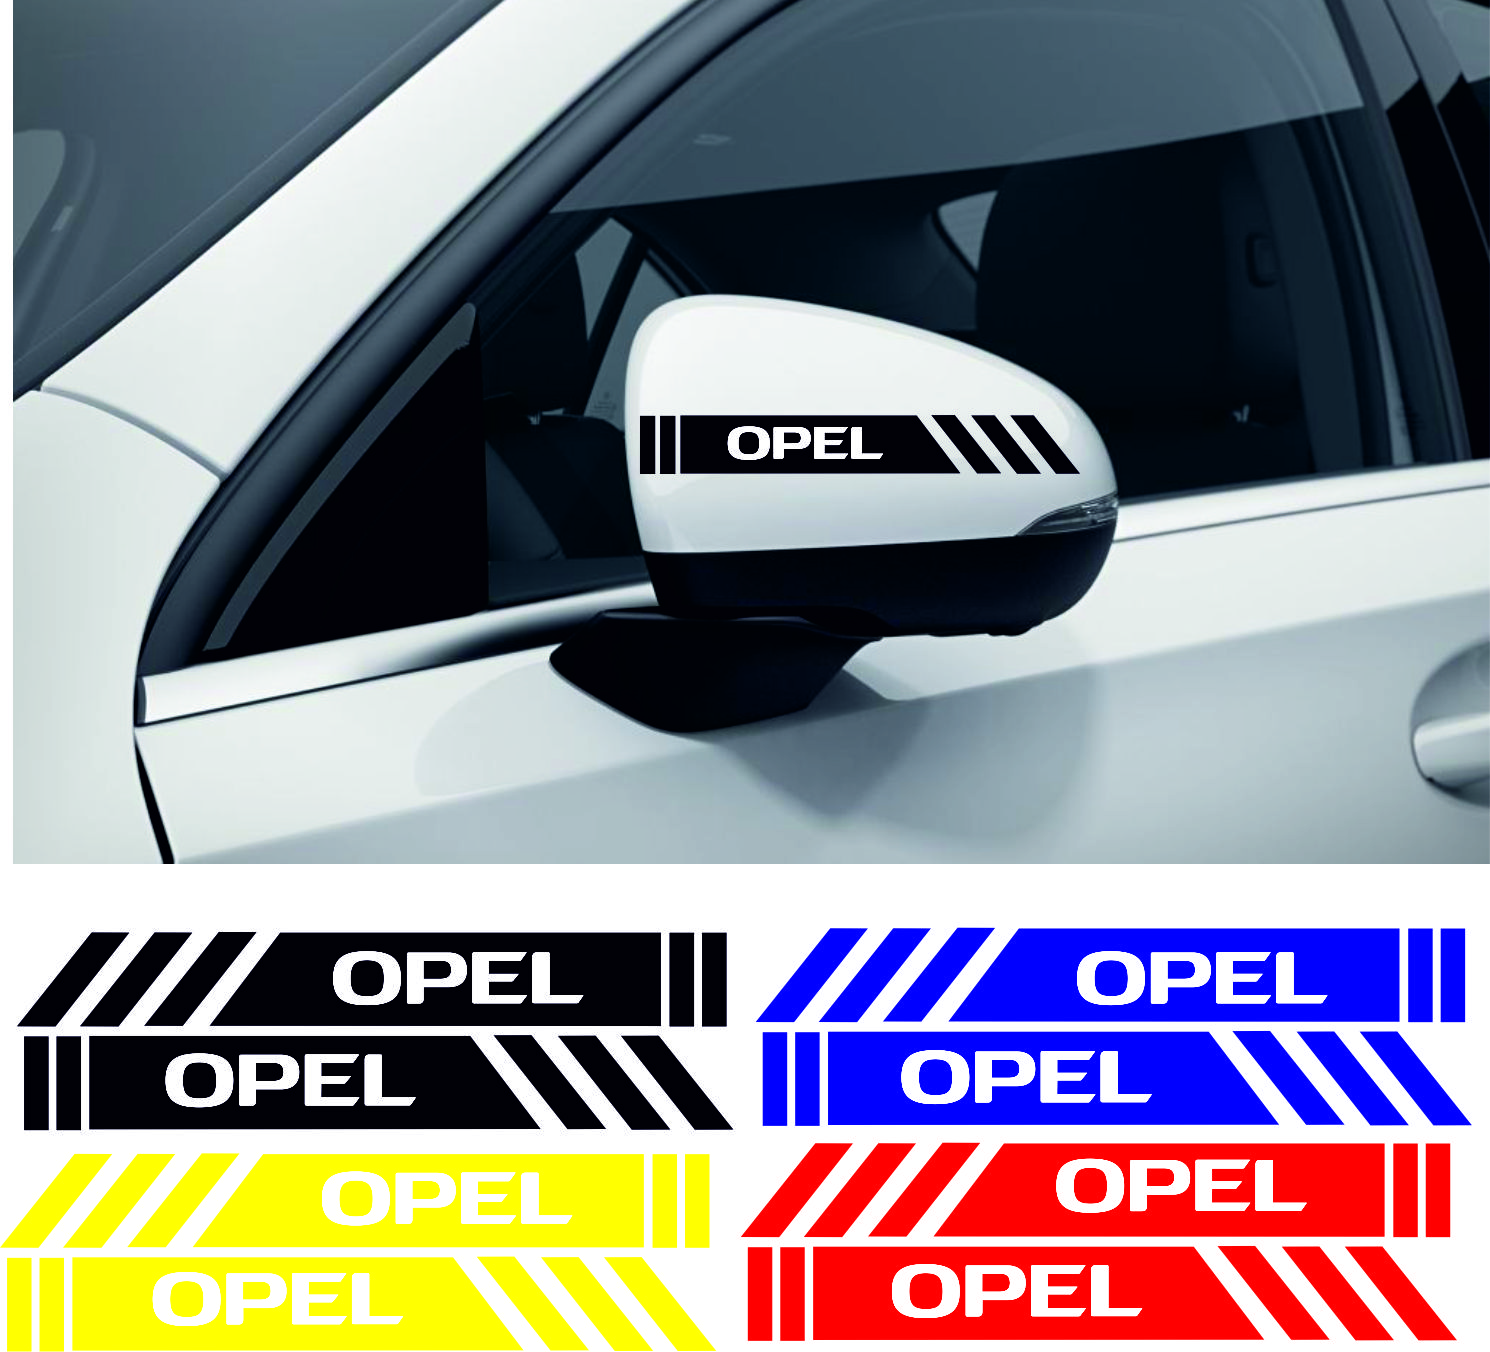 opel sticker 2 - Opel yan ayna şerit sticker